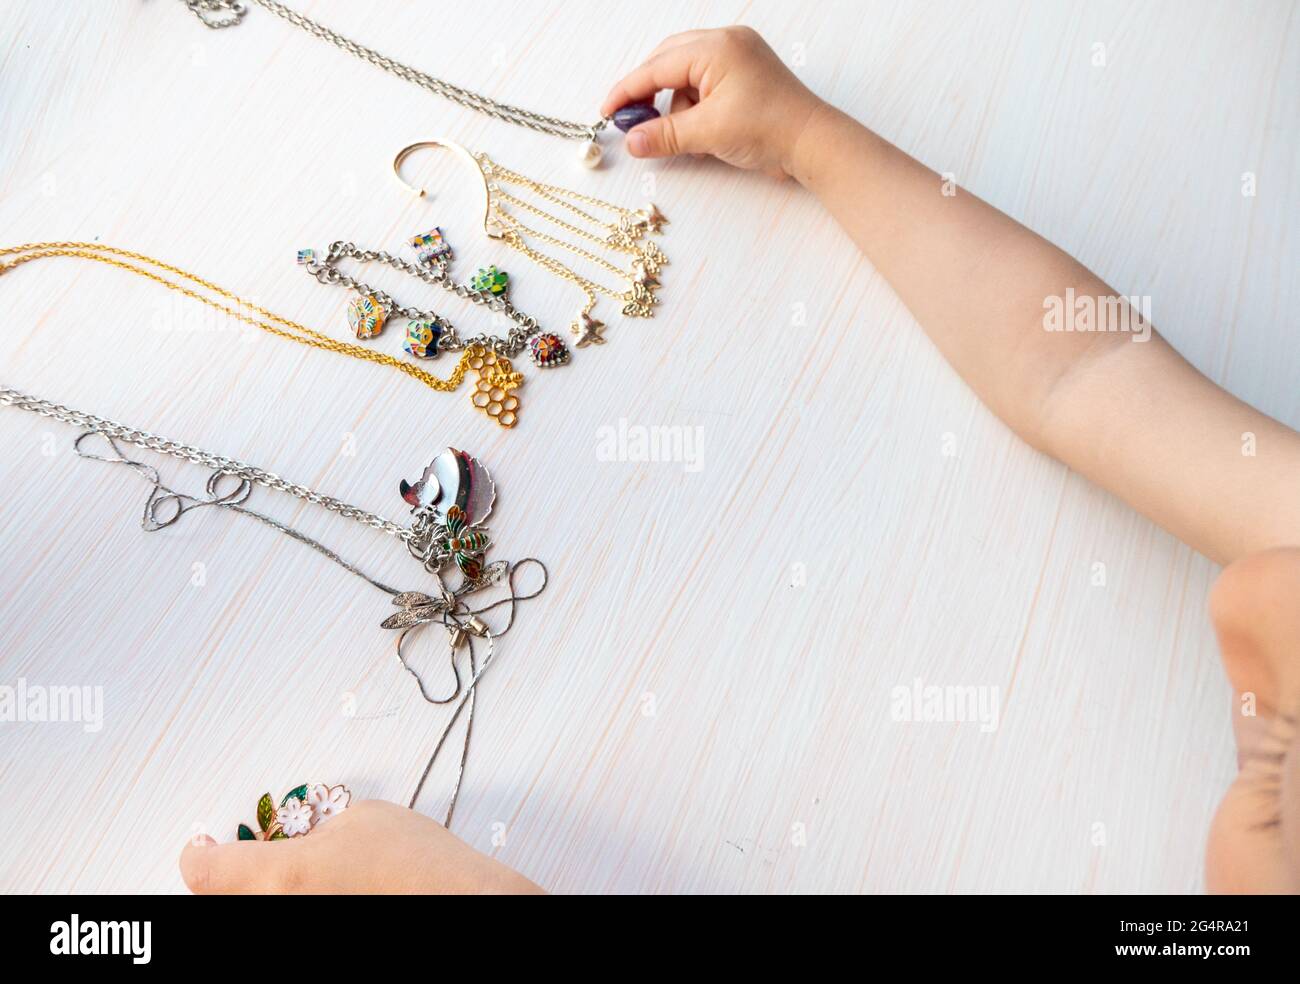 felicità delle donne - le mani dei bambini giocano con bijouterie estive chiare, su sfondo bianco Foto Stock